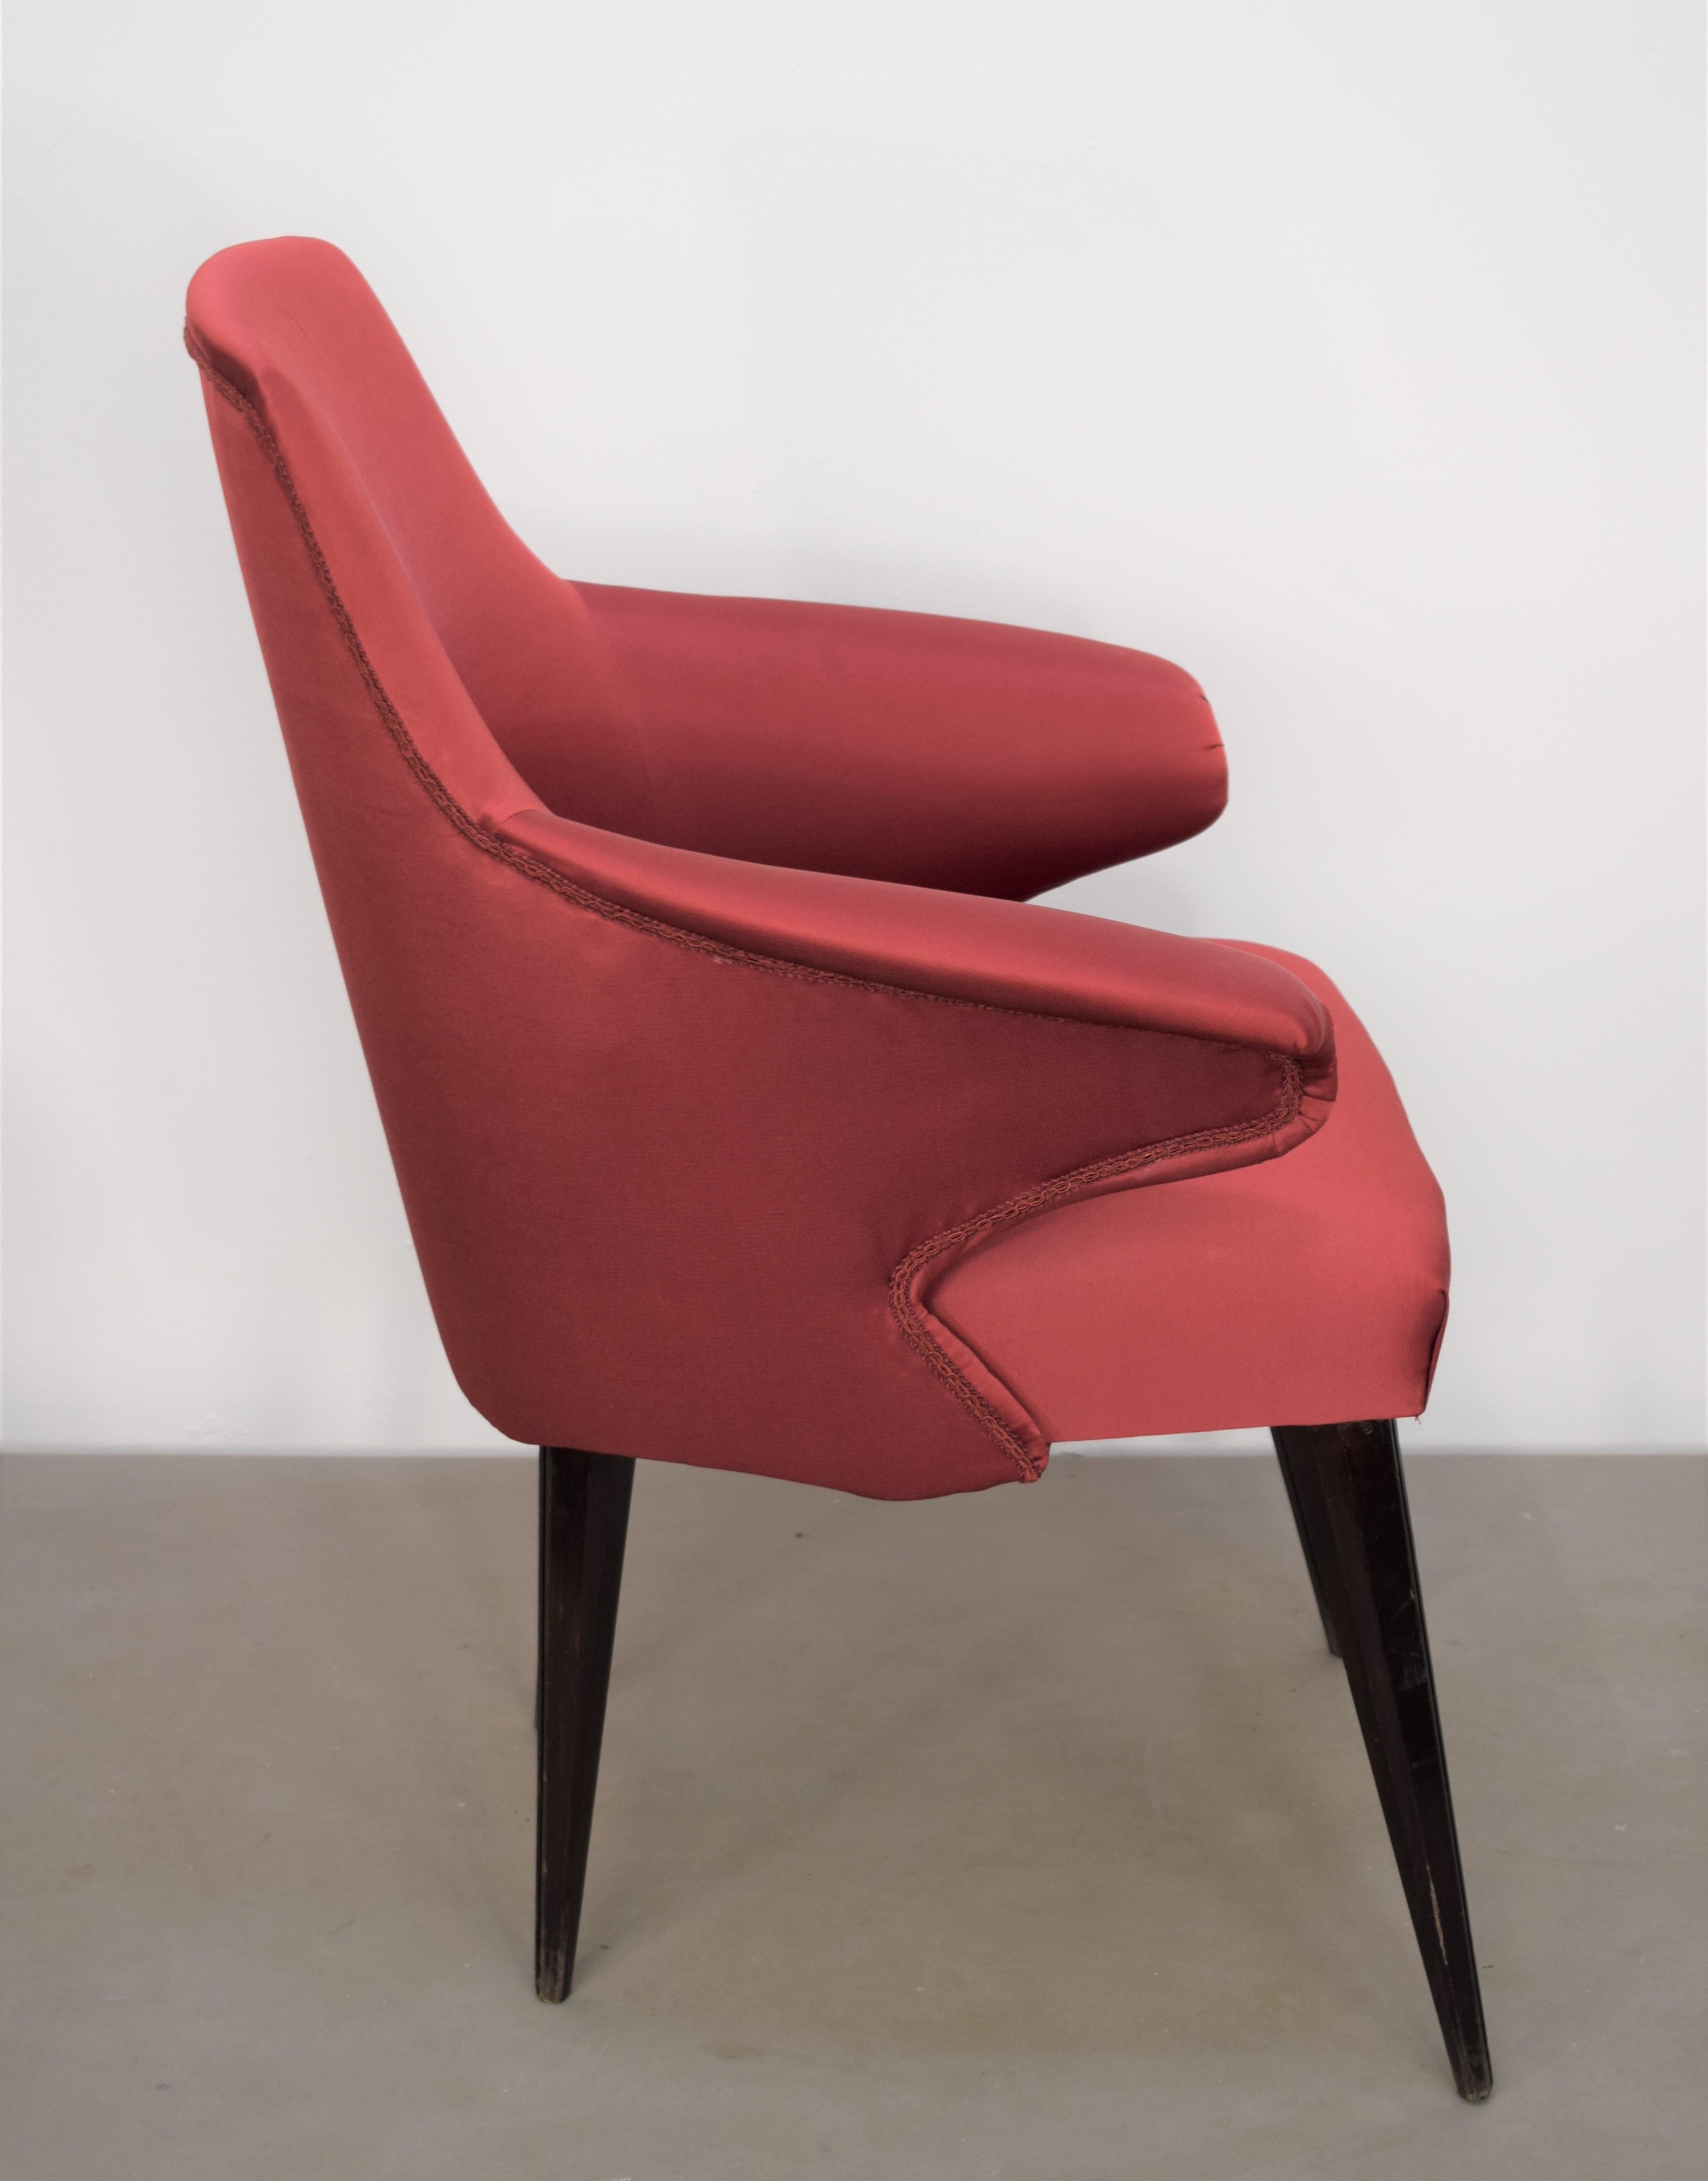 Wood Set of 3 Italian Chairs, Osvaldo Borsani Style, 1960s For Sale